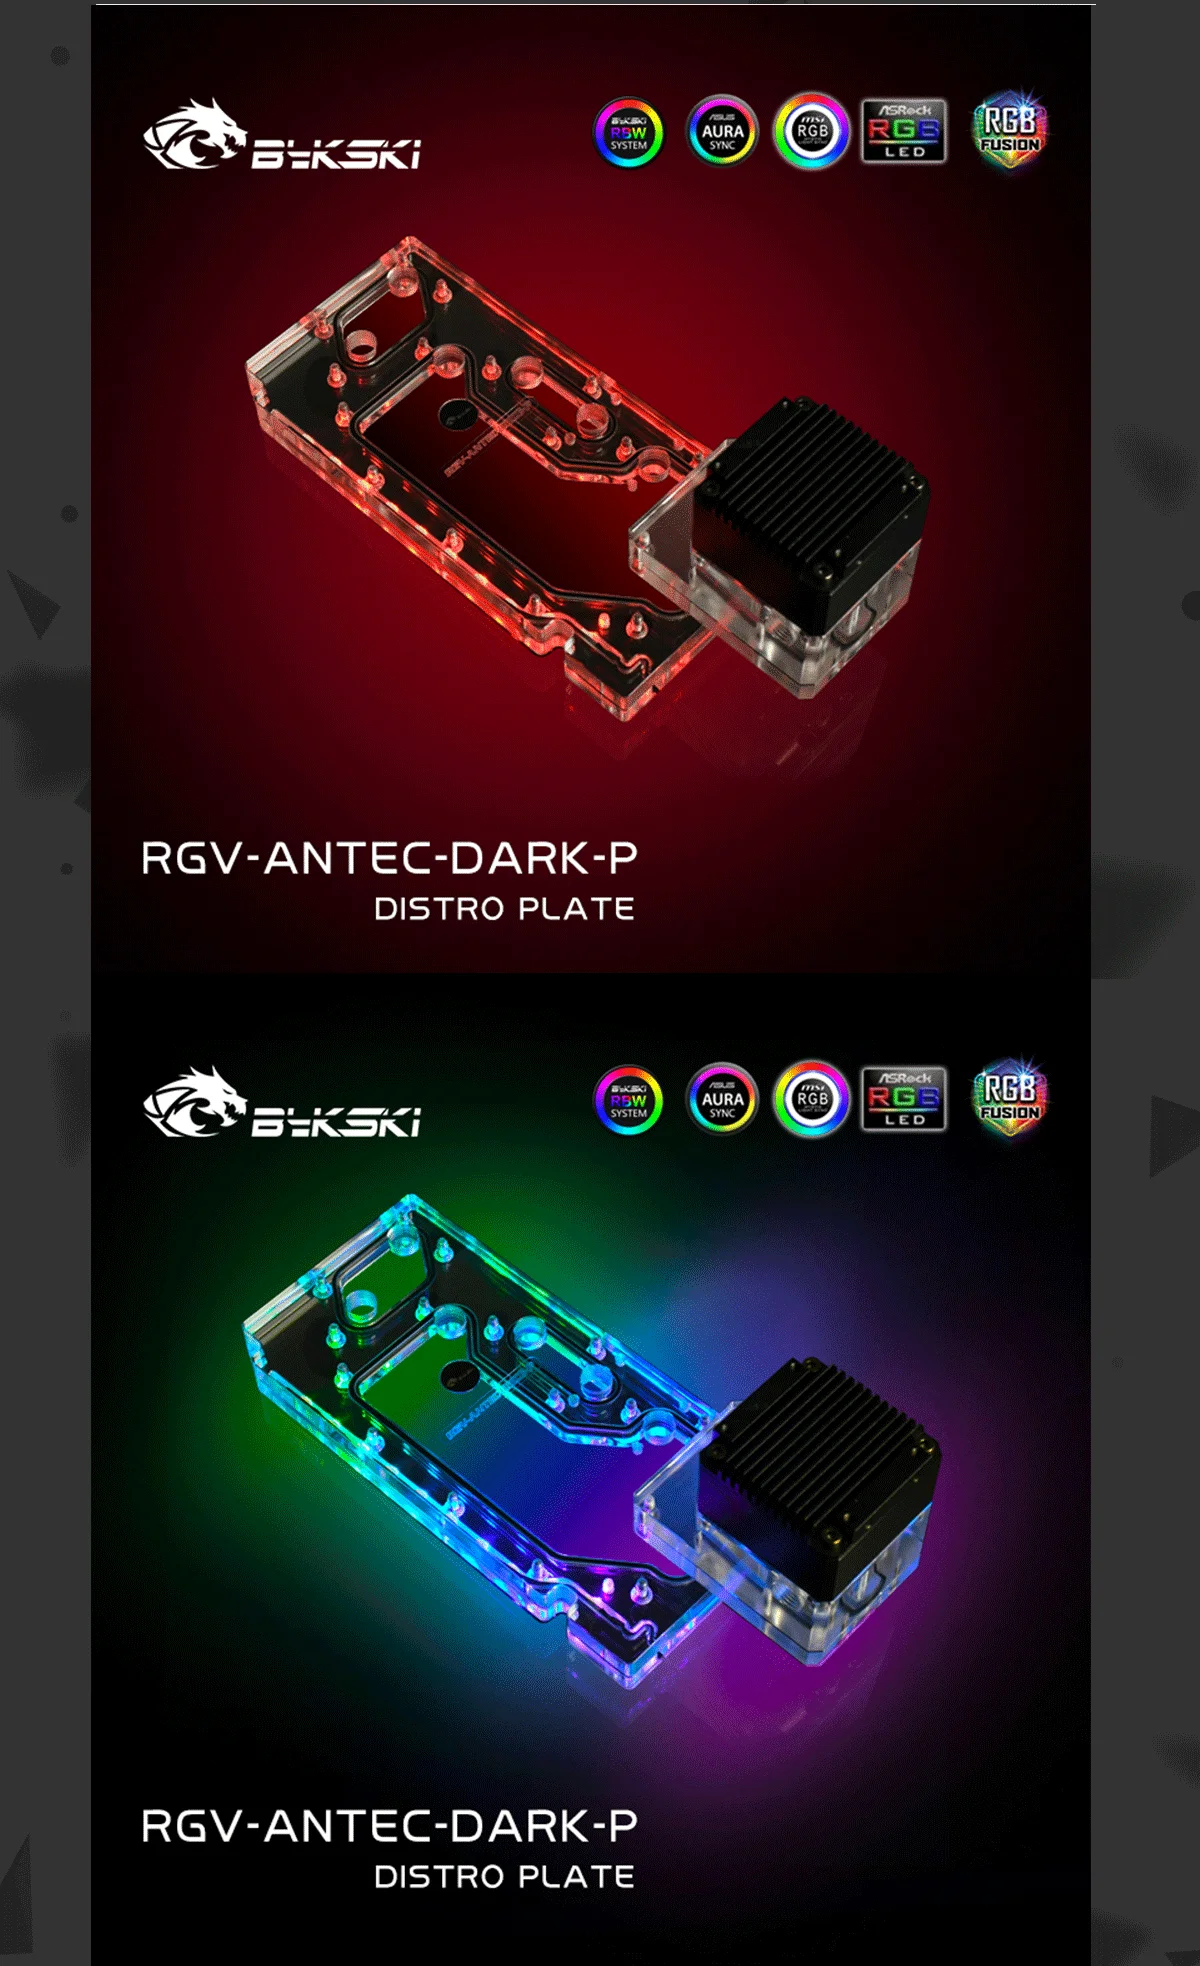 Bykski Distro Plate For Antec Dark Cube Case , Waterway Boards For Intel CPU Water Block & Single GPU Building  RGV-ANTEC-DARK-P  